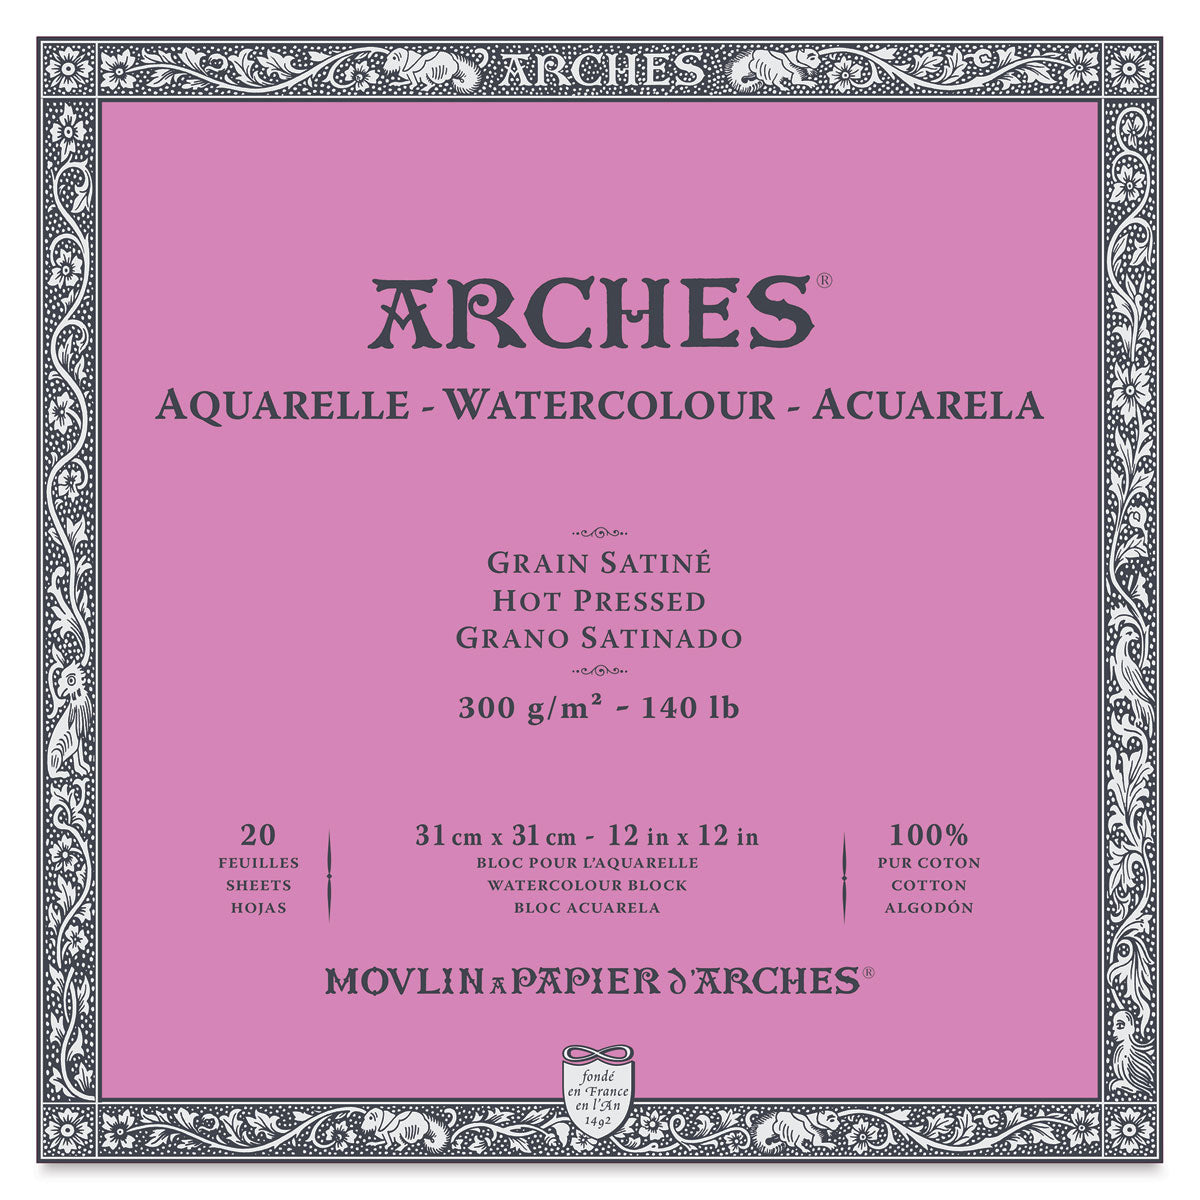 Arches Aquarelle Watercolor Block 300 lb. Cold Press 9 in. x 12 in.